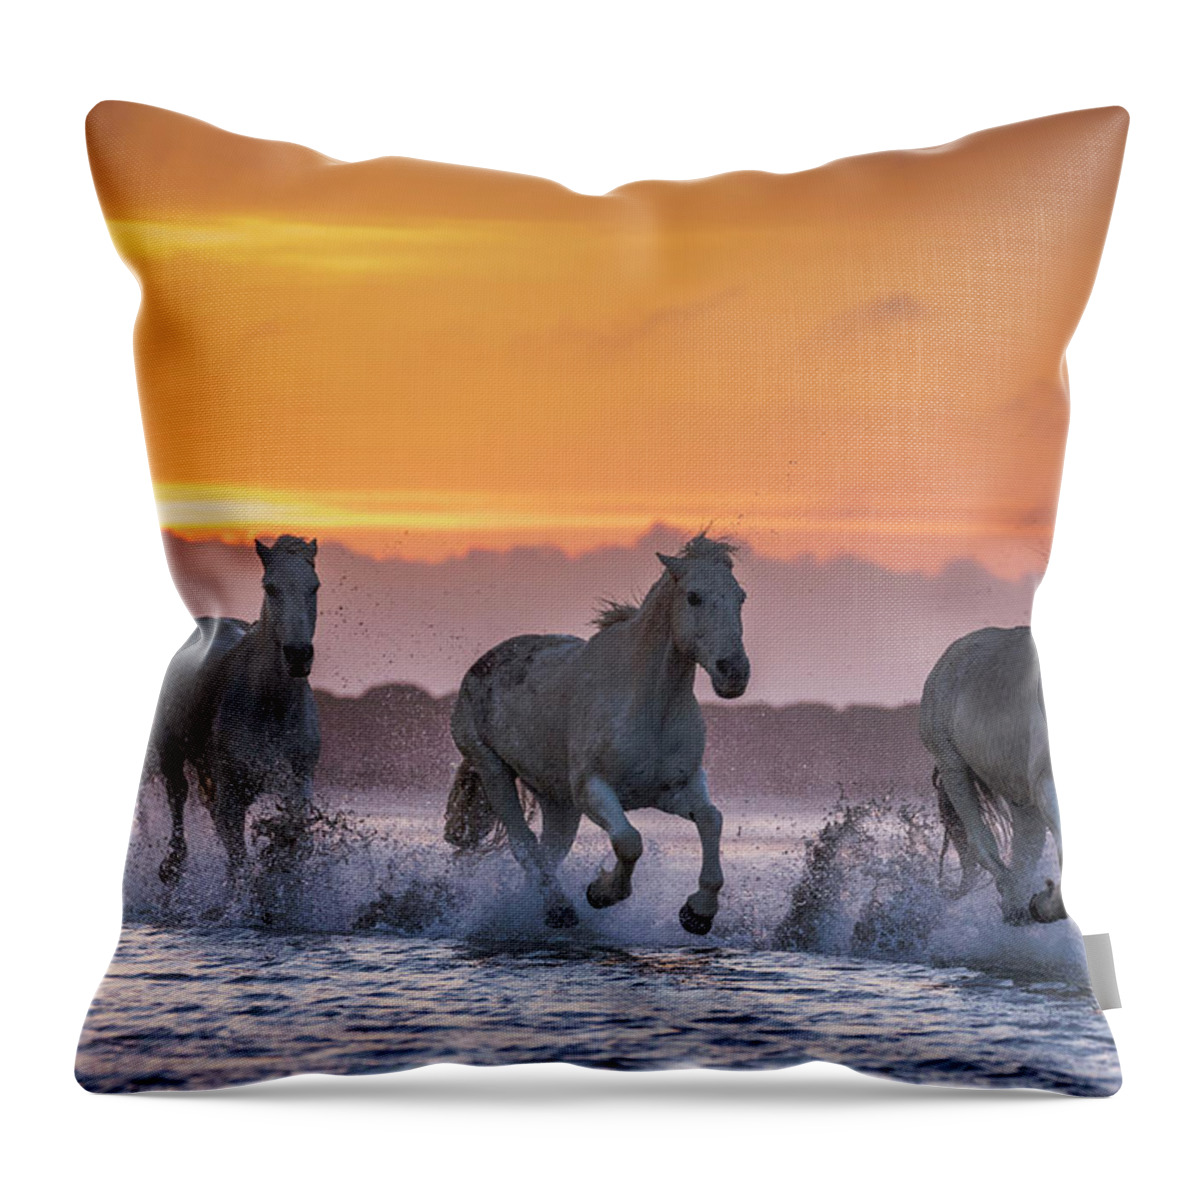 Estock Throw Pillow featuring the digital art Camargue Horses by Beniamino Pisati